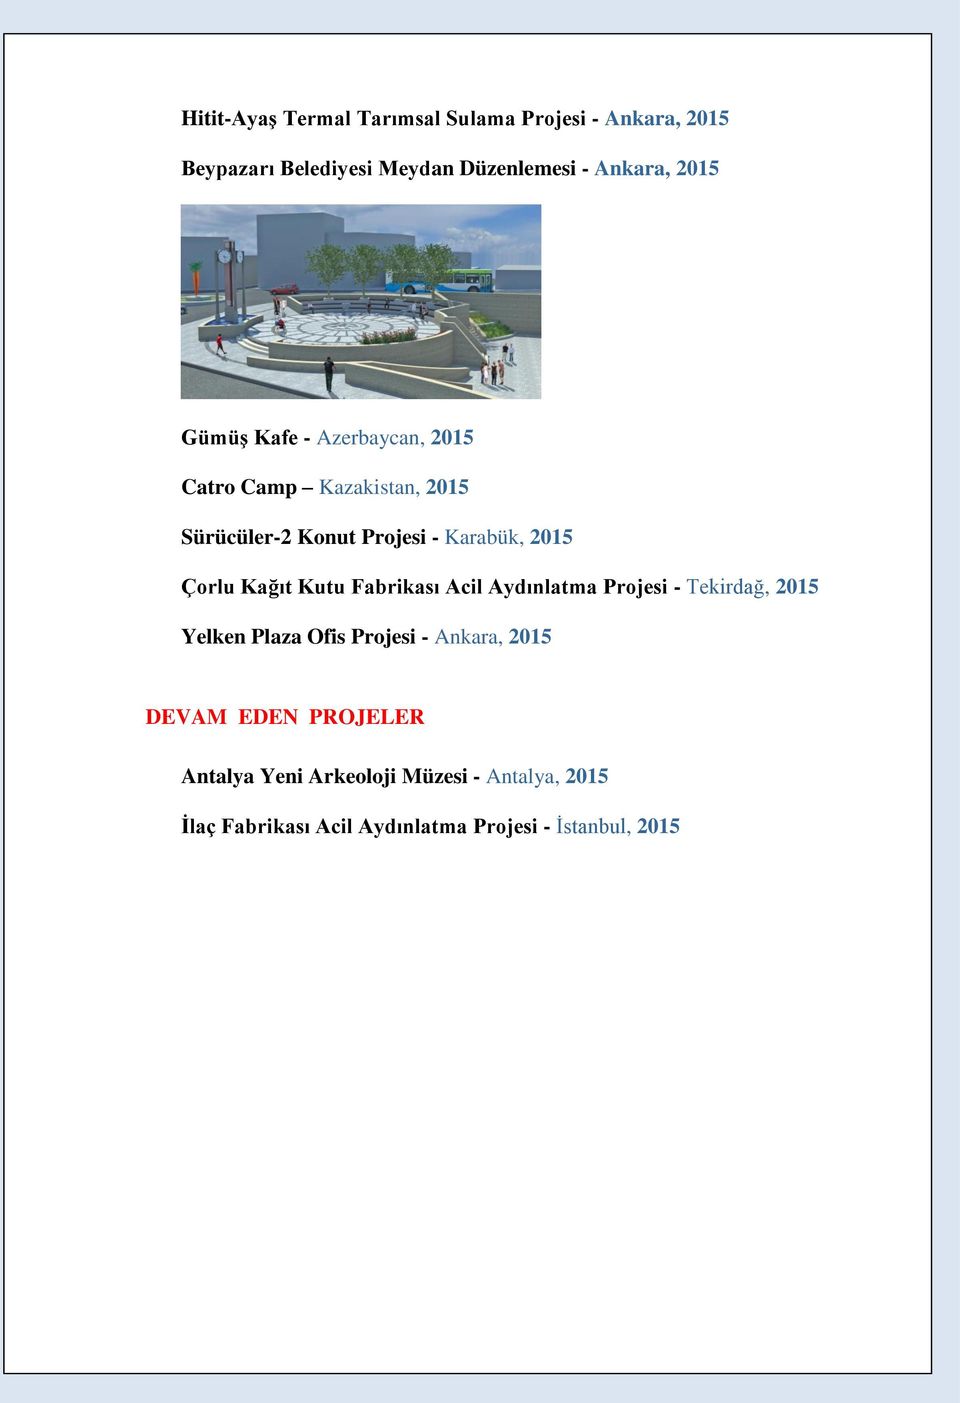 Kağıt Kutu Fabrikası Acil Aydınlatma Projesi - Tekirdağ, 2015 Yelken Plaza Ofis Projesi - Ankara, 2015 DEVAM